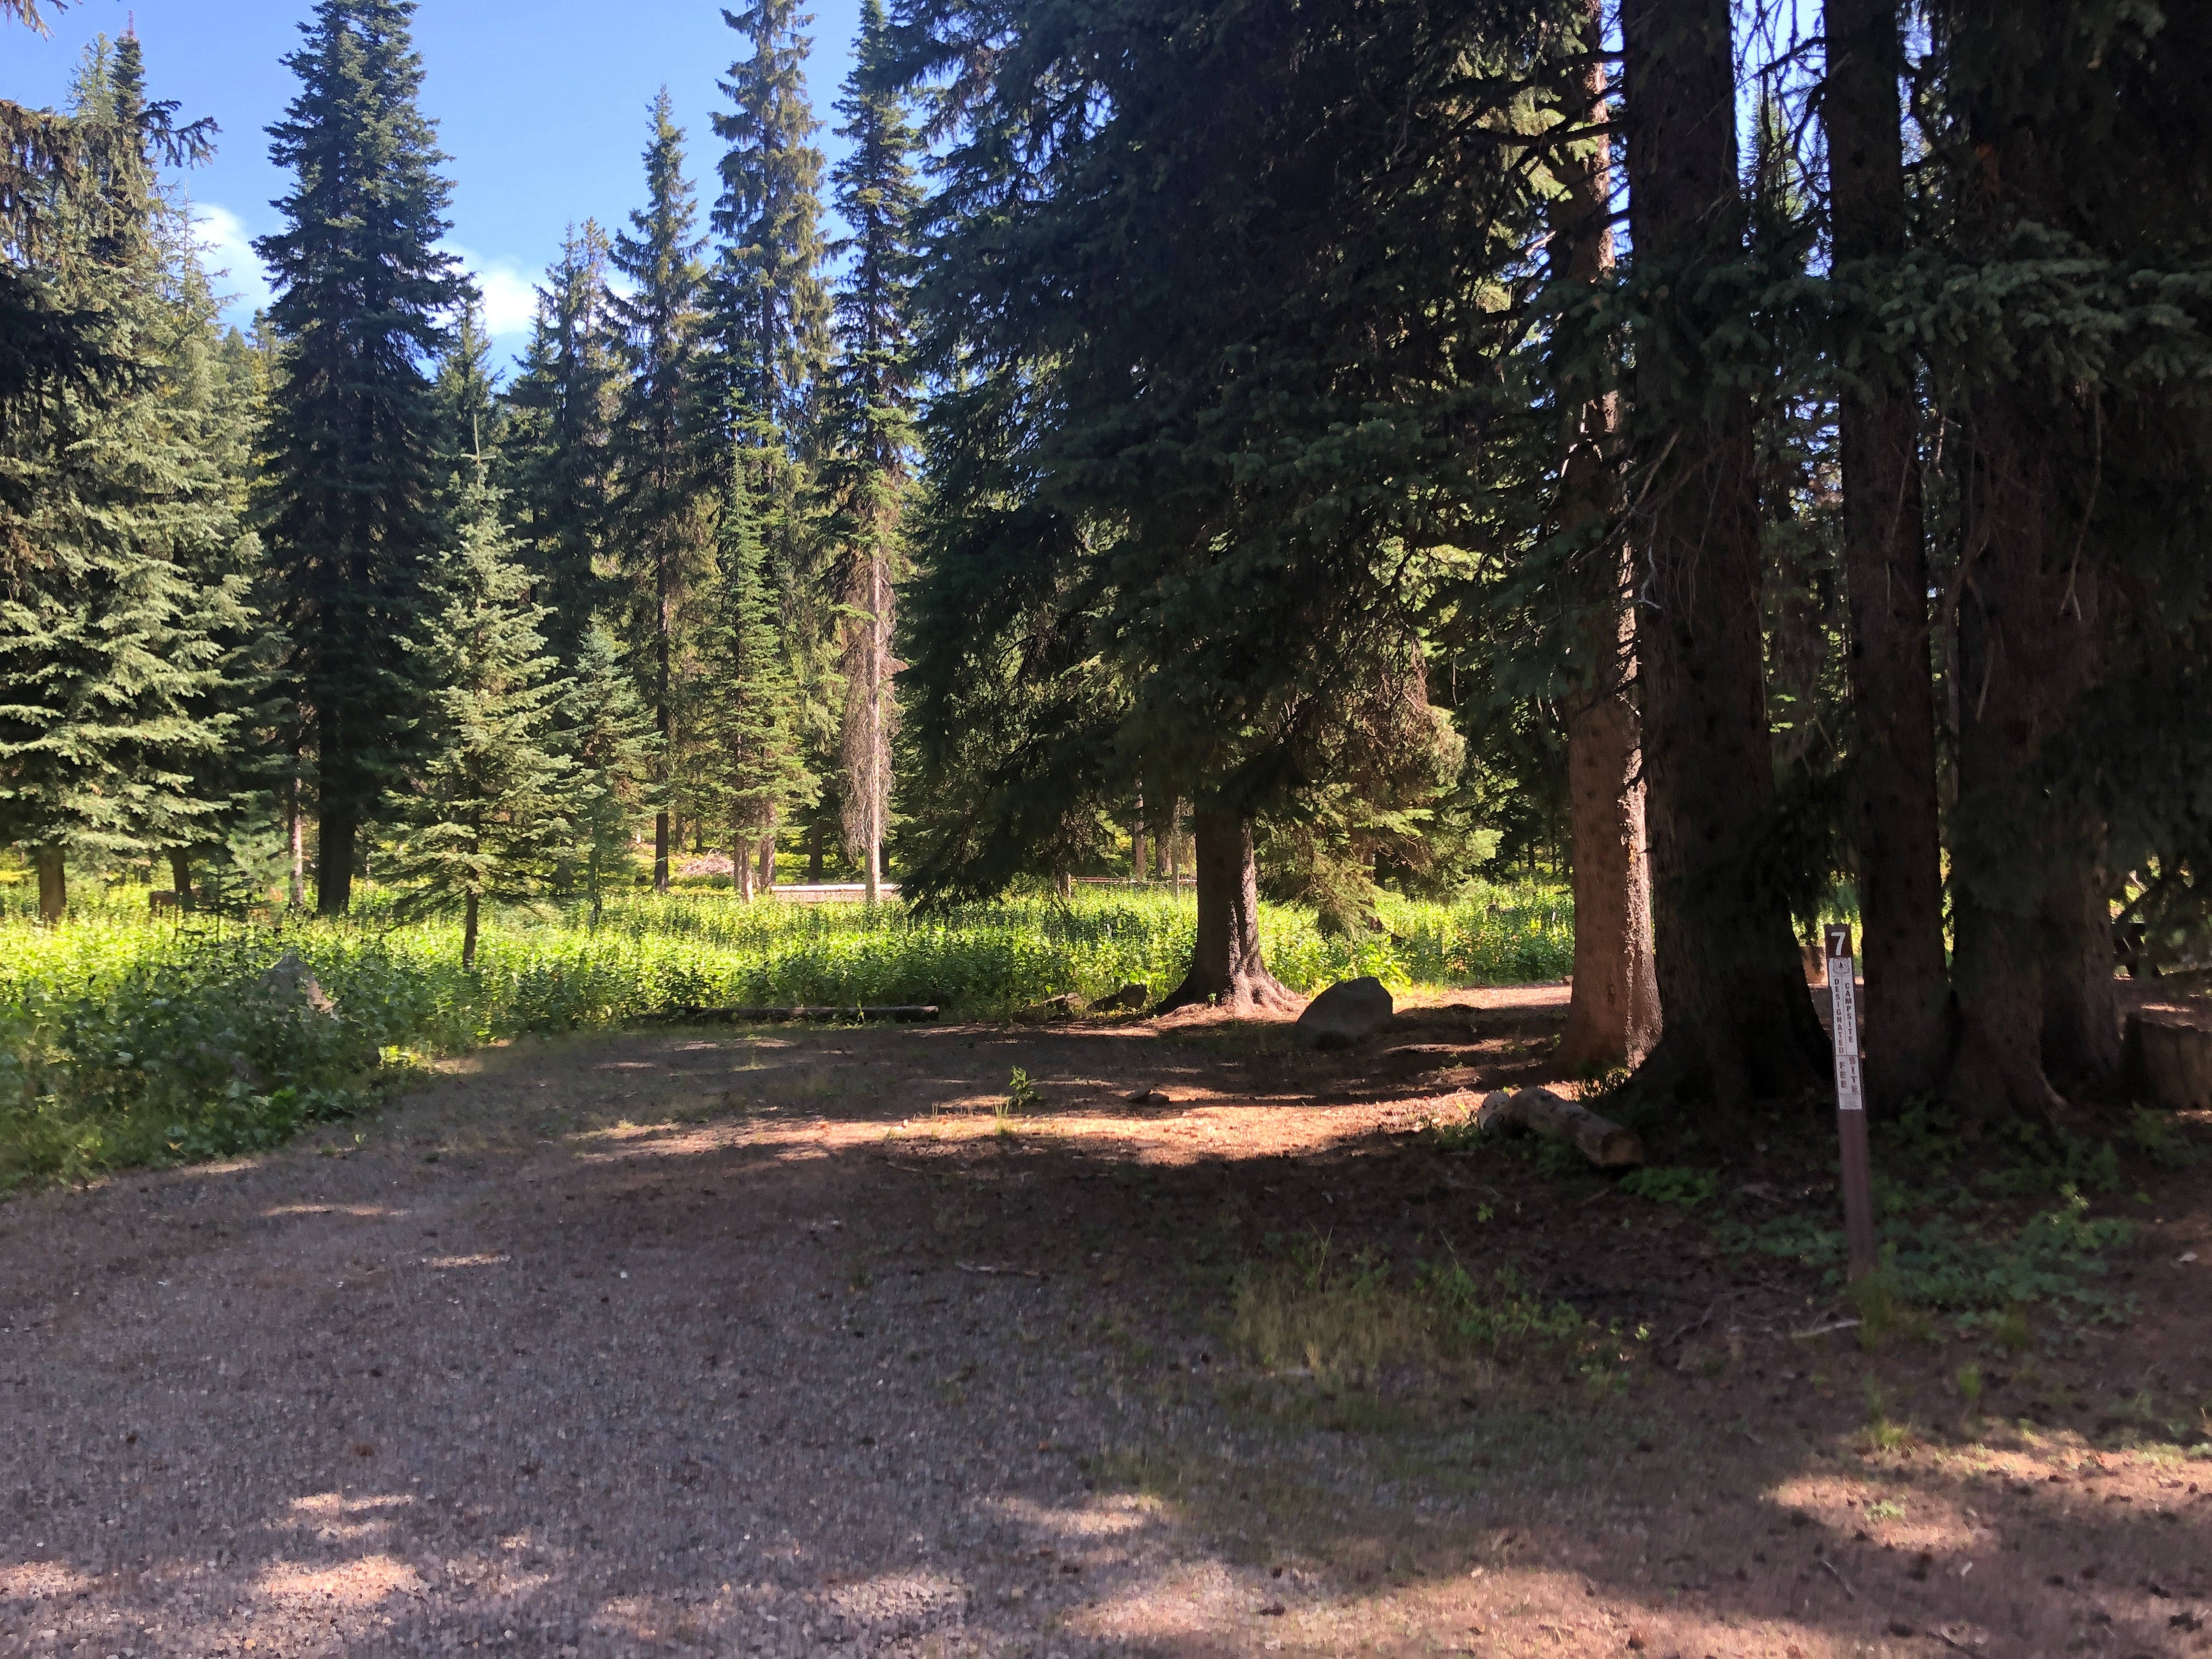 A pretty empty campground